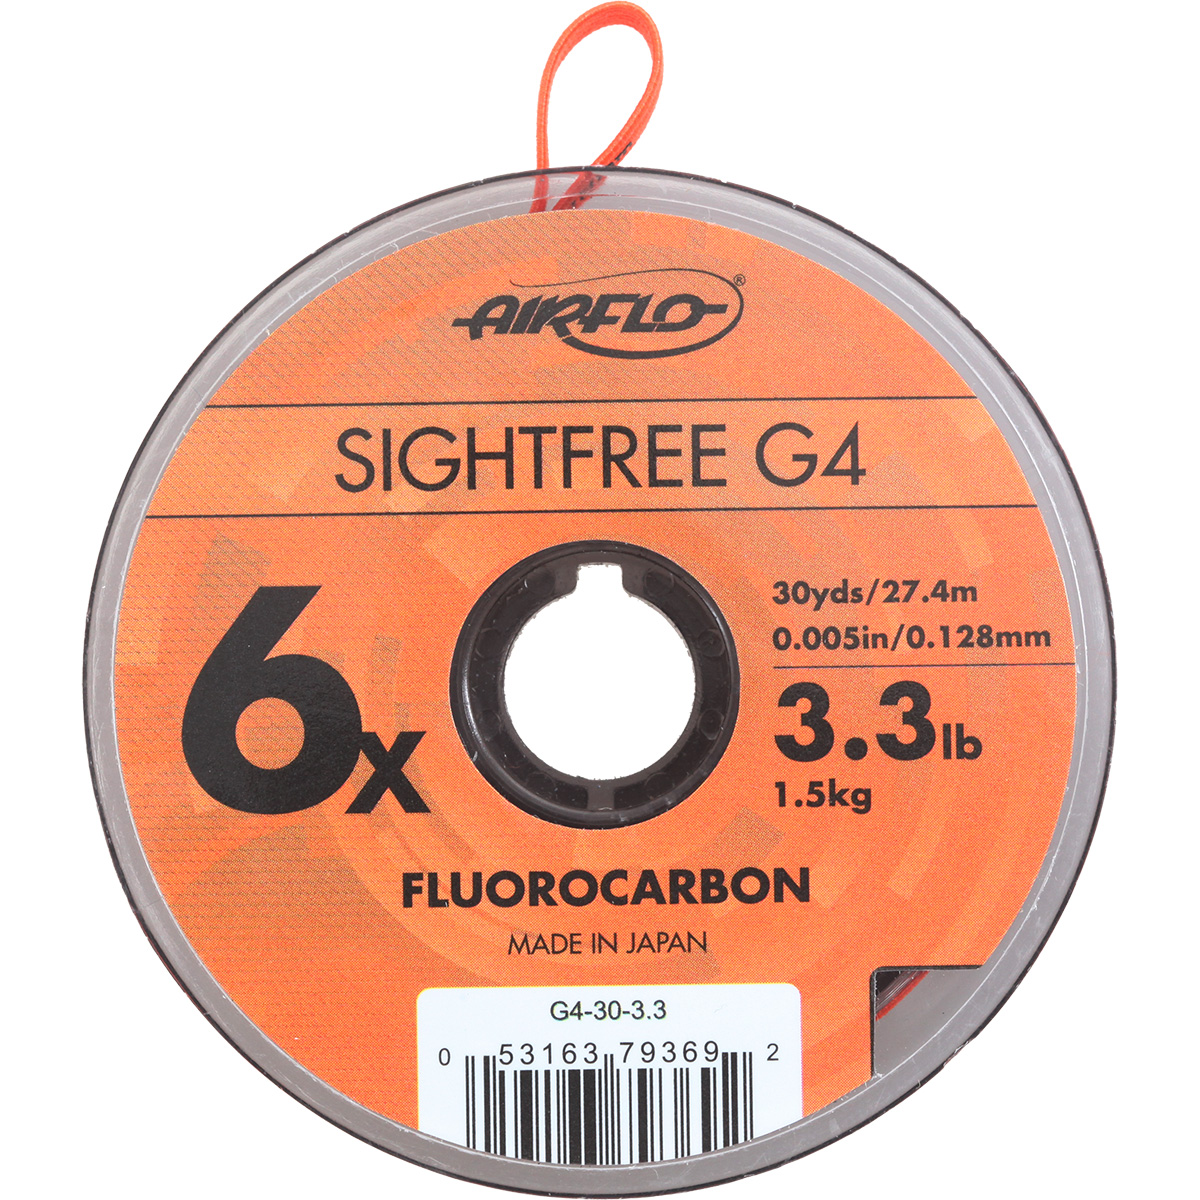 Airflo Sightfree G4 Fluoro